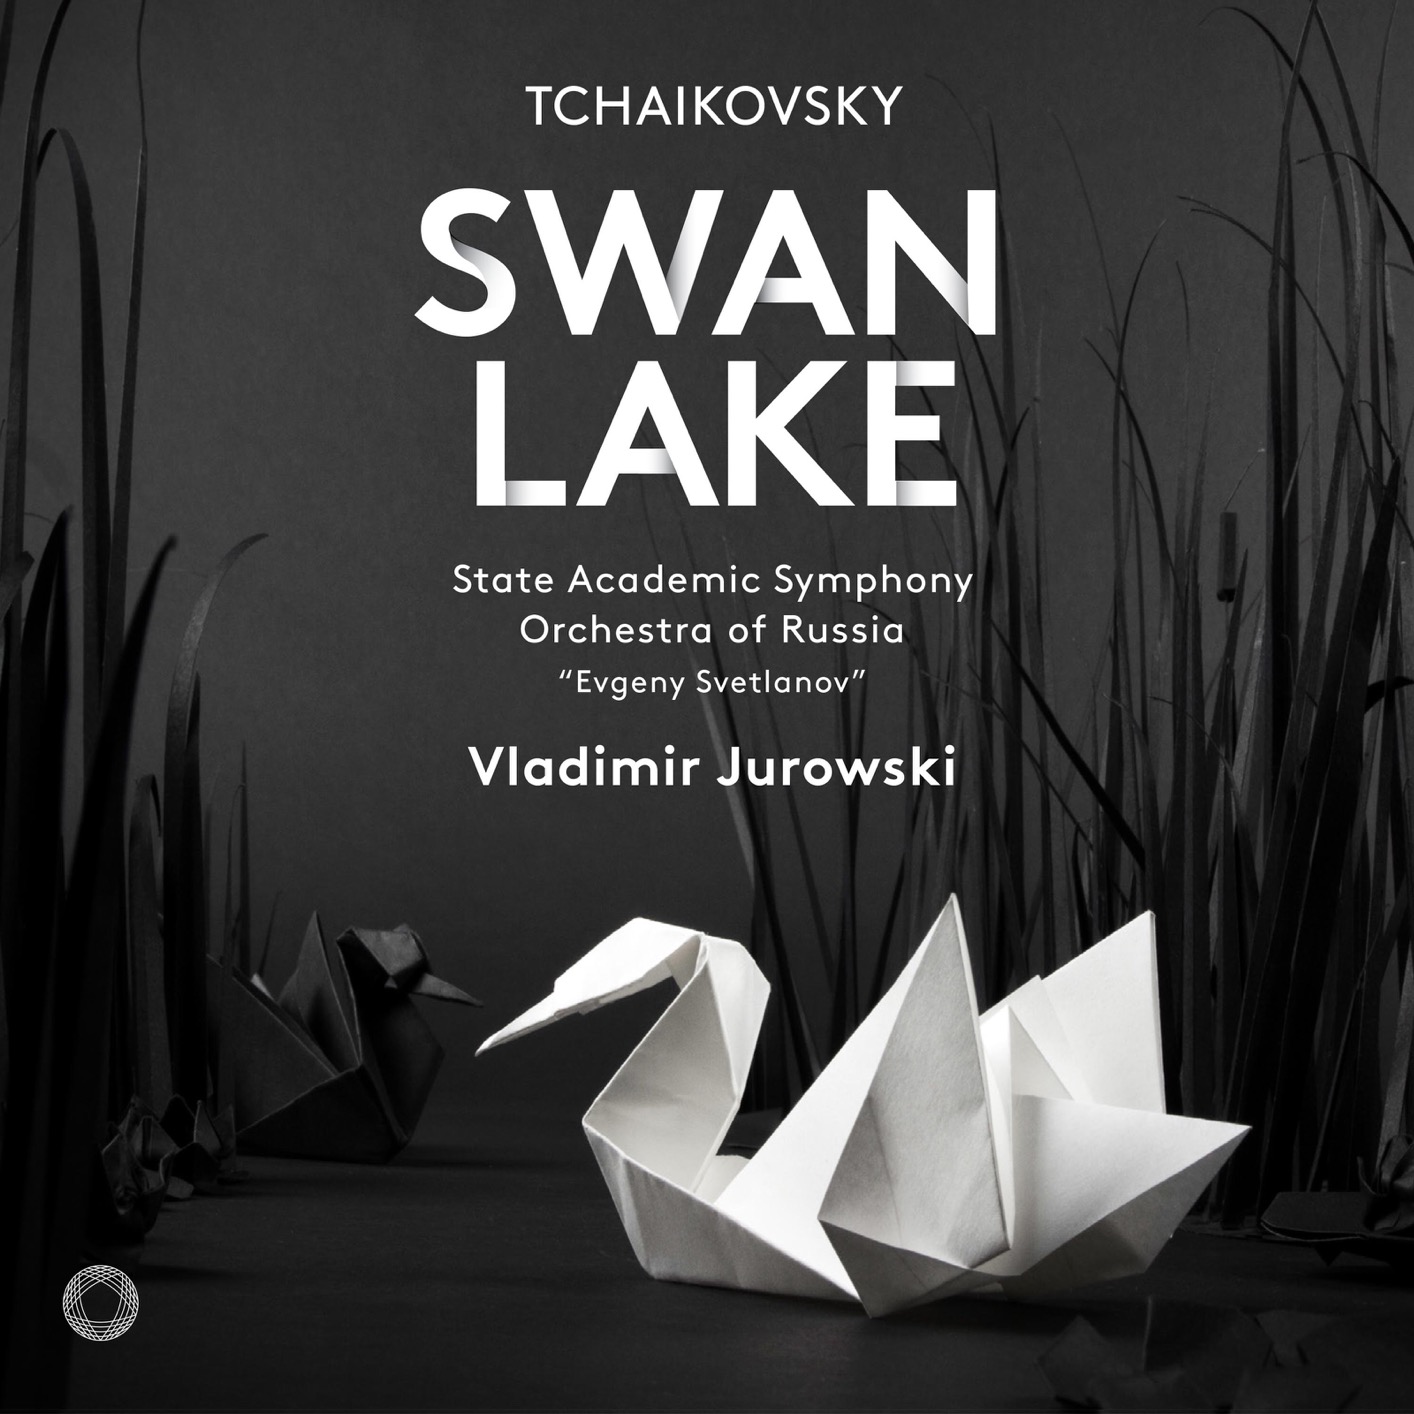 Vladimir Jurowski - Tchaikovsky: Swan Lake, Op. 22, TH 12 (1877 Version) (2018) [FLAC 24bit/96kHz]